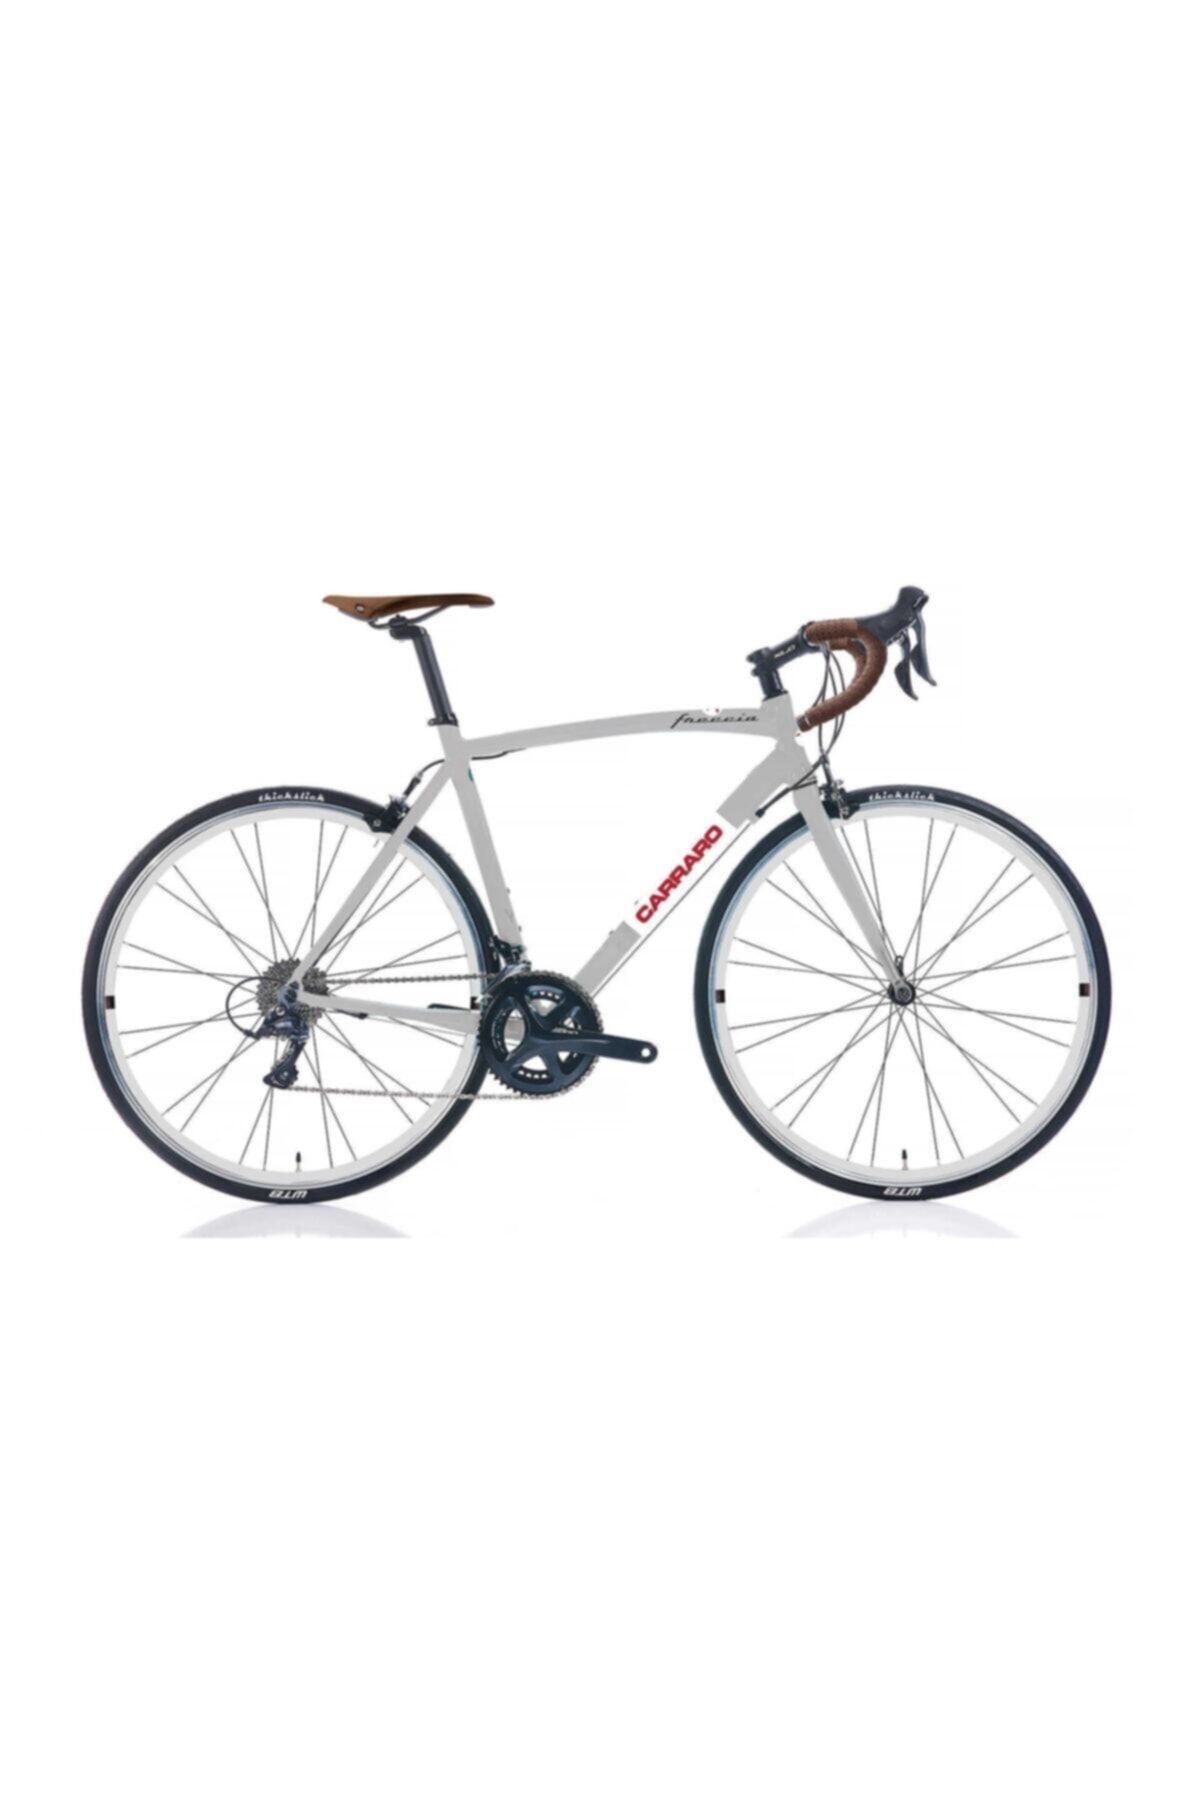 Carraro 2021 Freccıa Yol Bisikleti Gümüş-beyaz-kırmızı-siyah 56 Cm